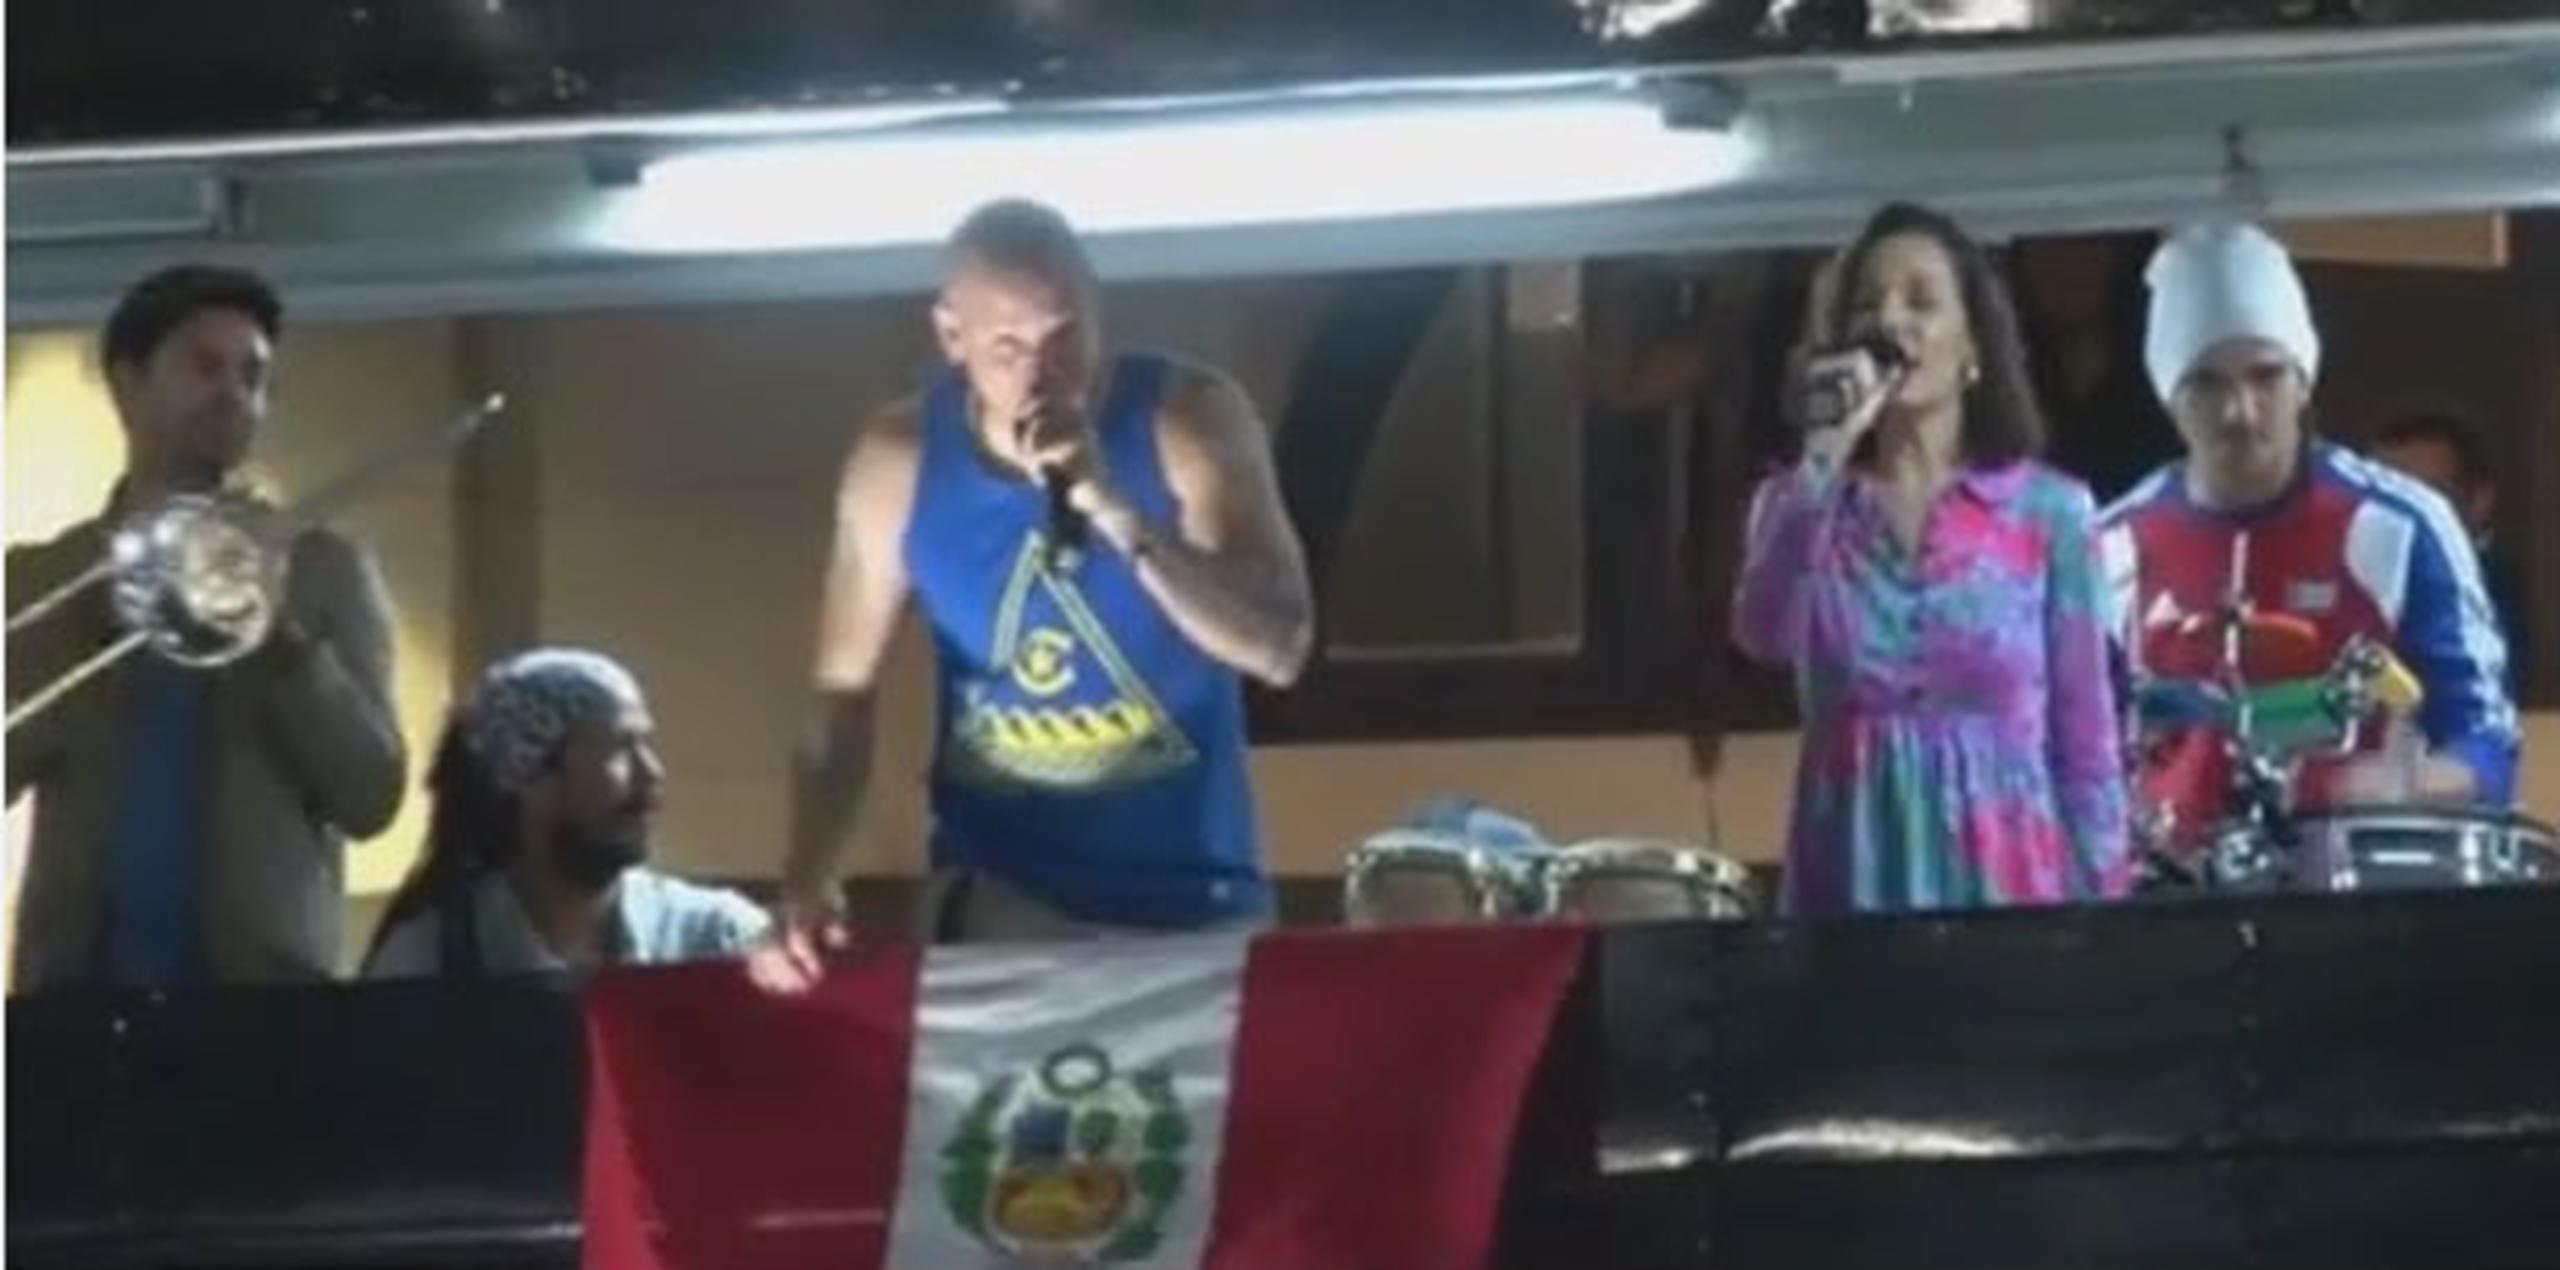 Apostados en un autobús que sirvió como escenario frente al Gran Hotel Bolívar, Calle 13 apareció en torno a la 1:00  de la madrugada y ofreció una compilación con media docena de sus canciones más famosas. (YouTube)